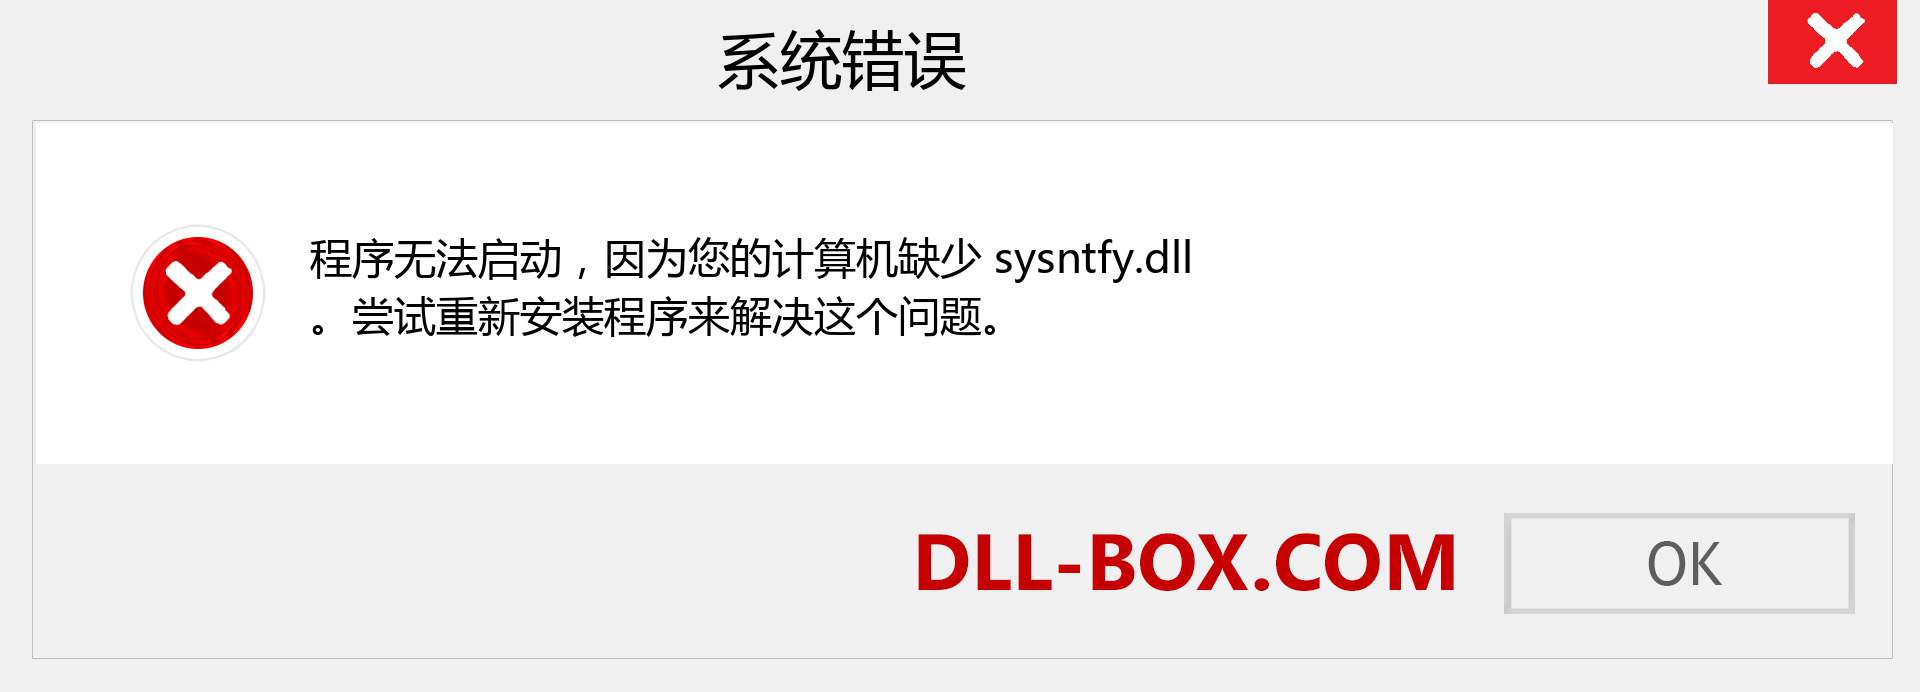 sysntfy.dll 文件丢失？。 适用于 Windows 7、8、10 的下载 - 修复 Windows、照片、图像上的 sysntfy dll 丢失错误